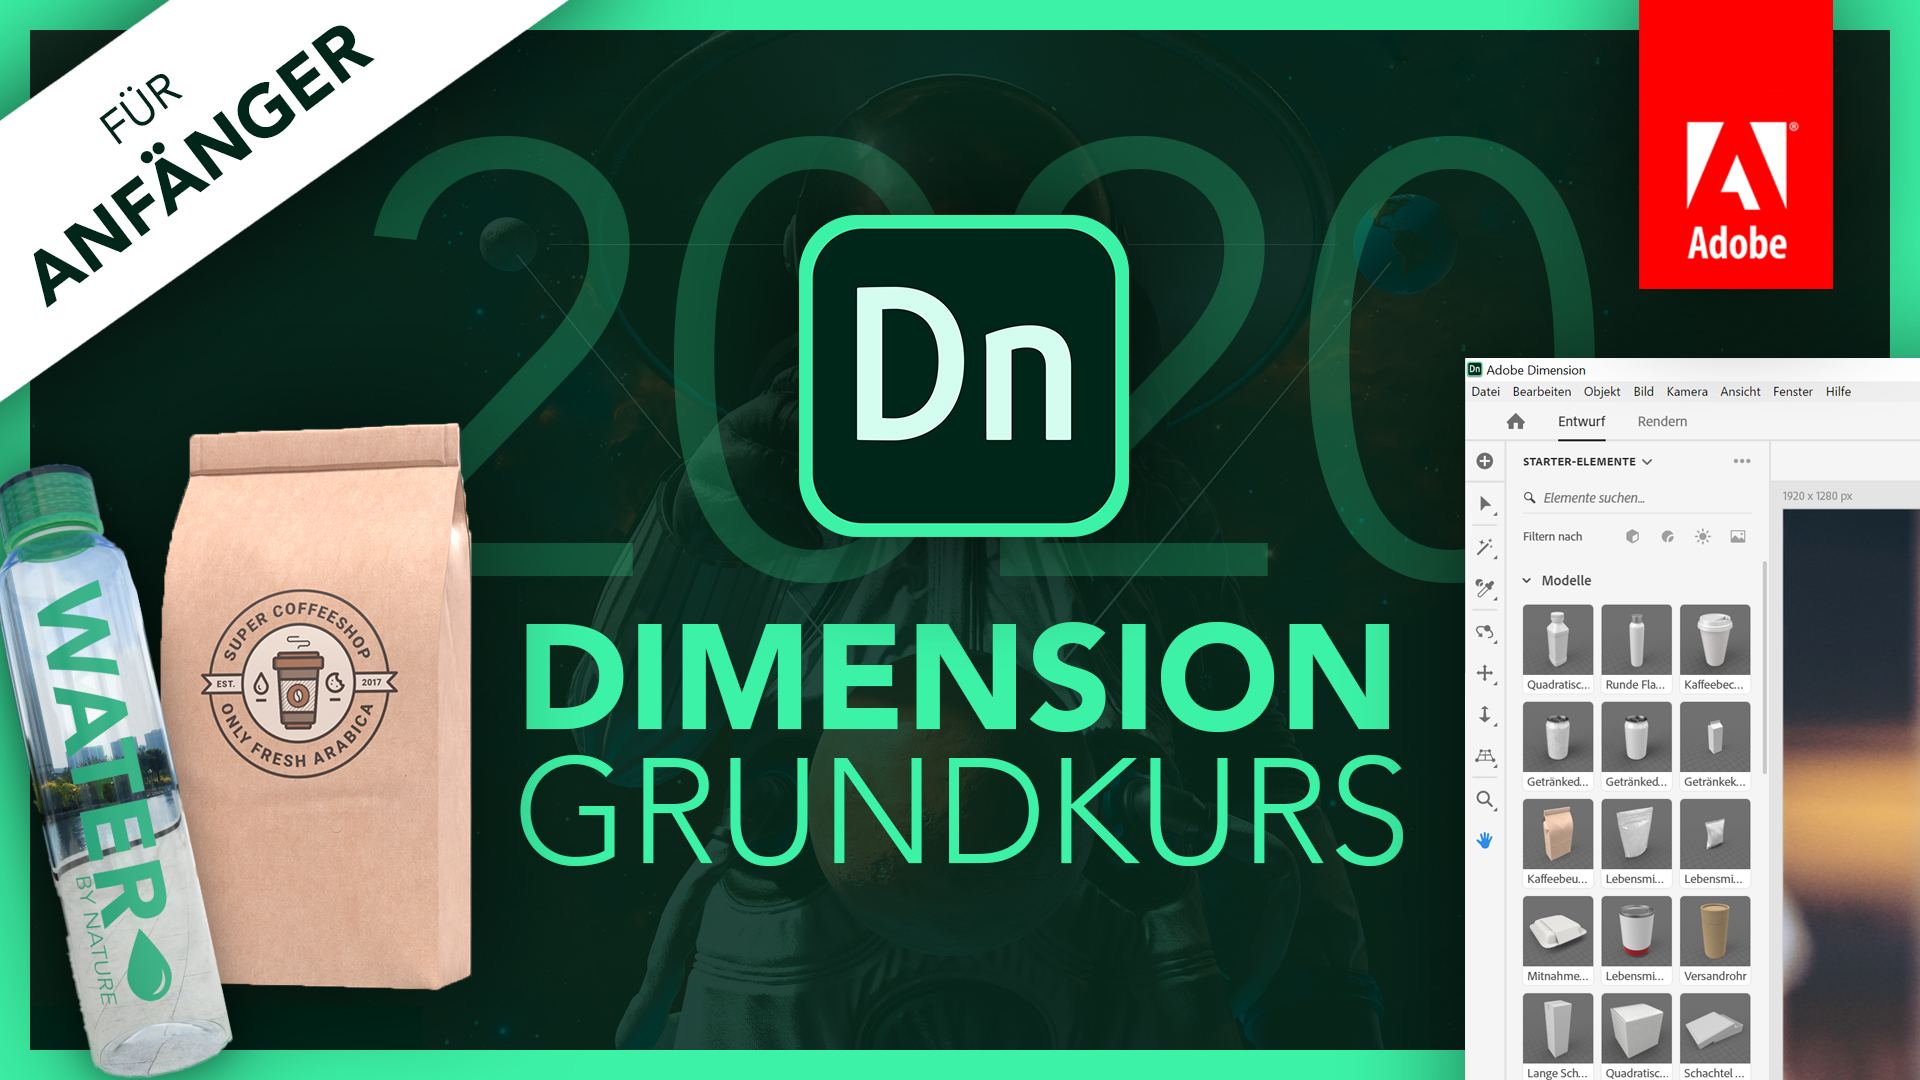 Adobe Dimension 2020 (Grundkurs für Anfänger) Deutsch